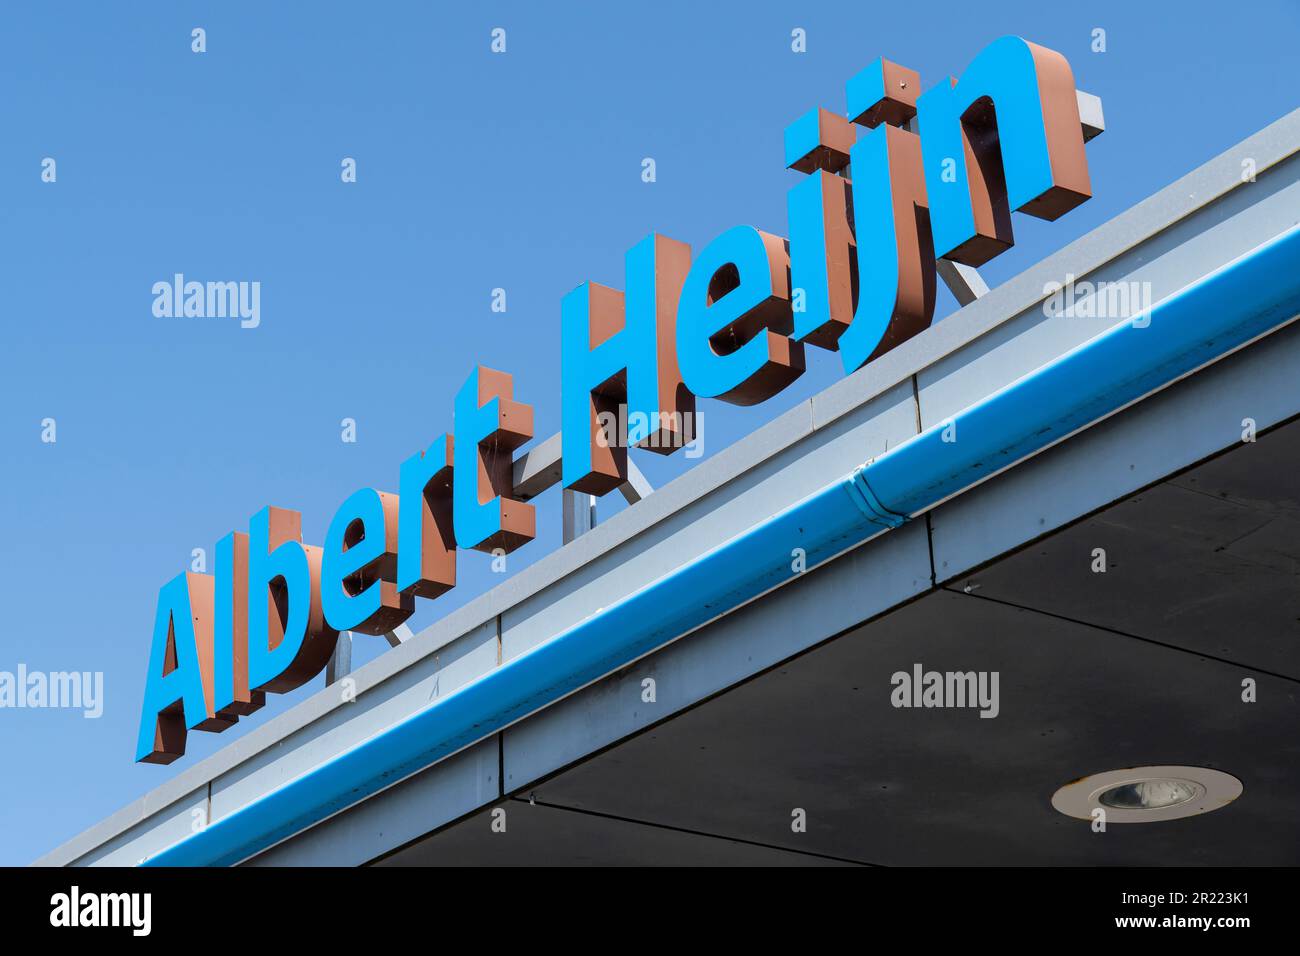 Albert Heijn lettering at branch. Albert Heijn is the largest supermarket chain in the Netherlands. Stock Photo